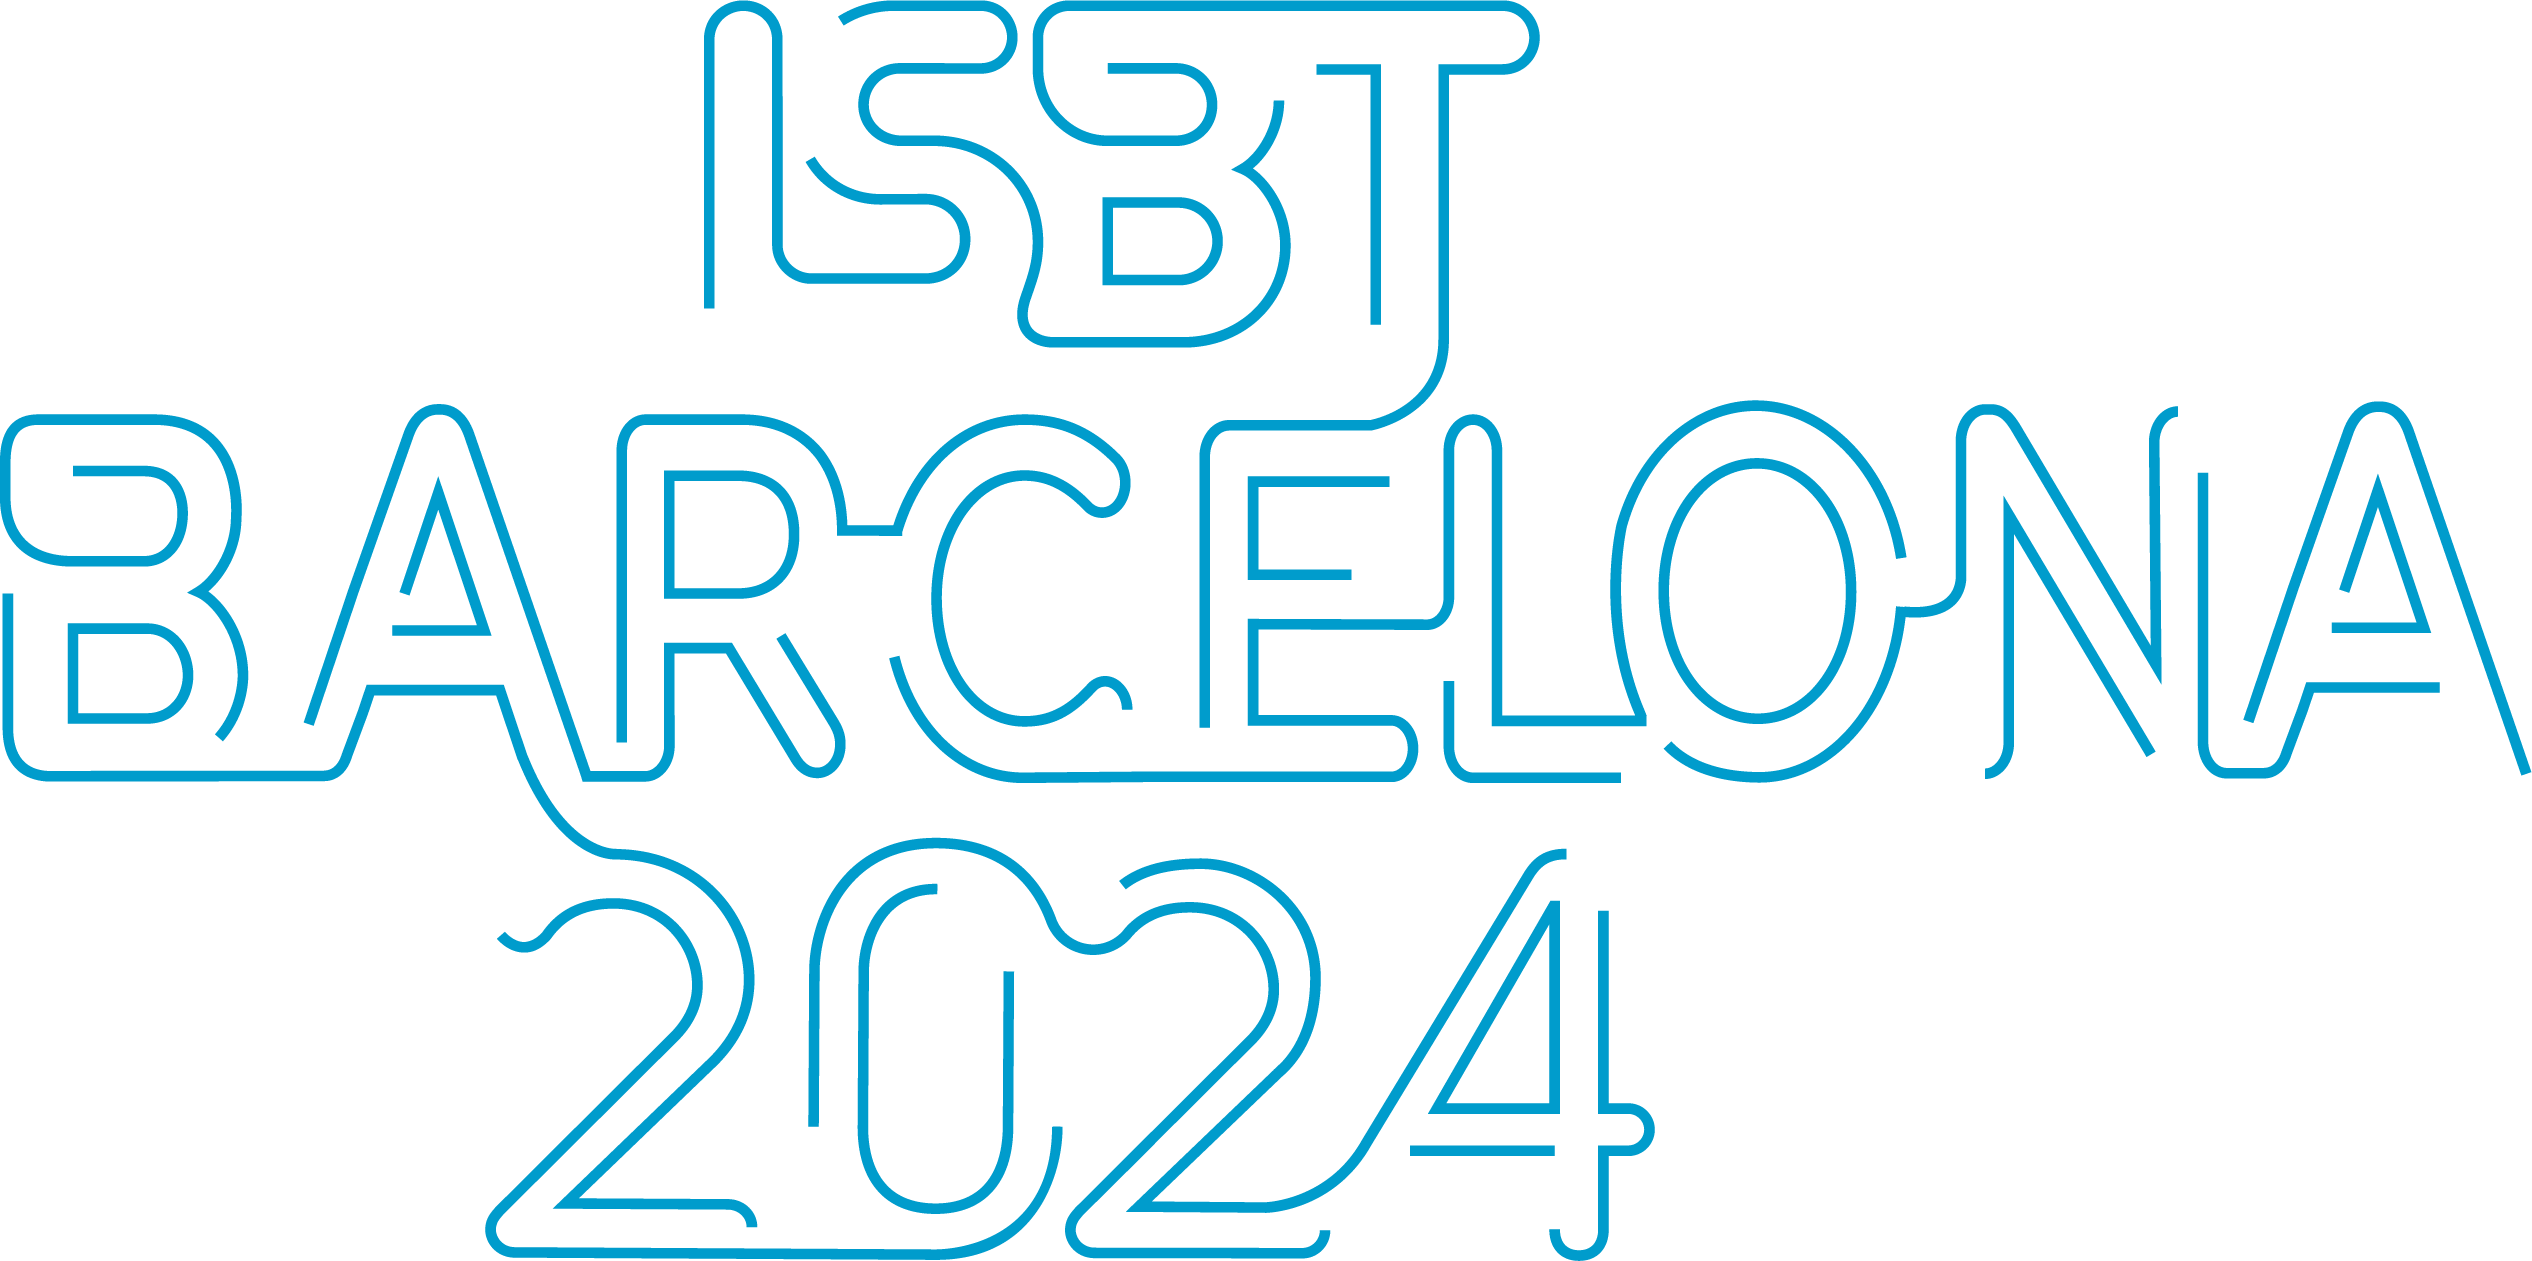 ISBT_Barcelona_2024_rgb_blue.png 1